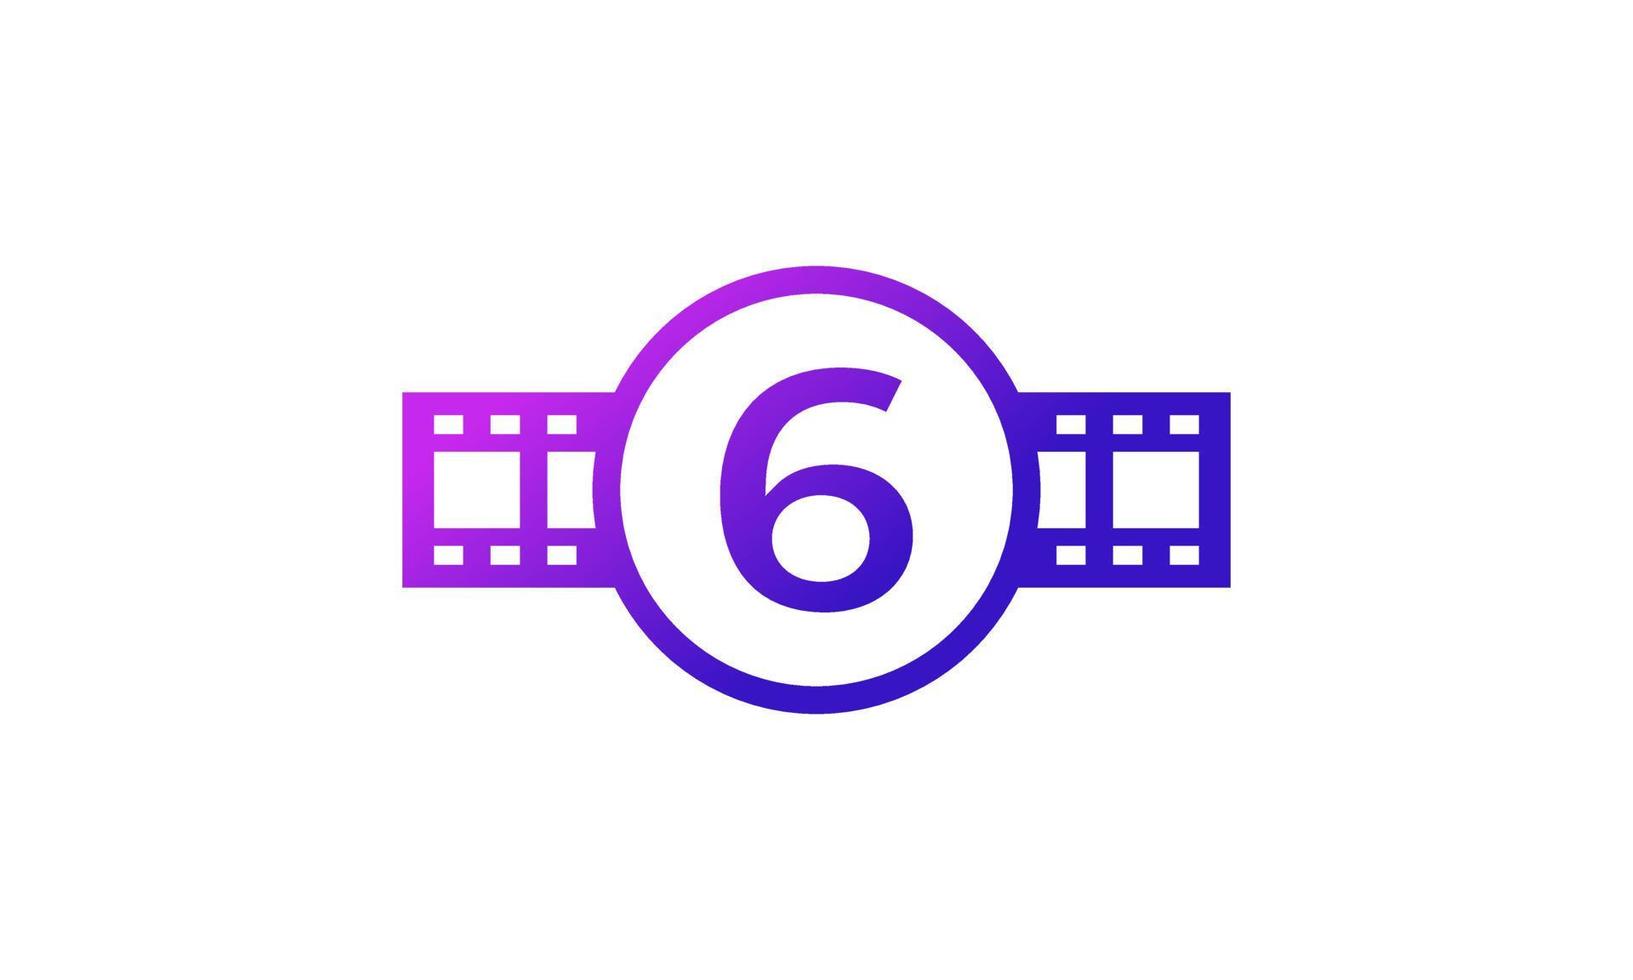 círculo número 6 con rayas de carrete tira de película para película estudio de producción de cine inspiración de logotipo vector